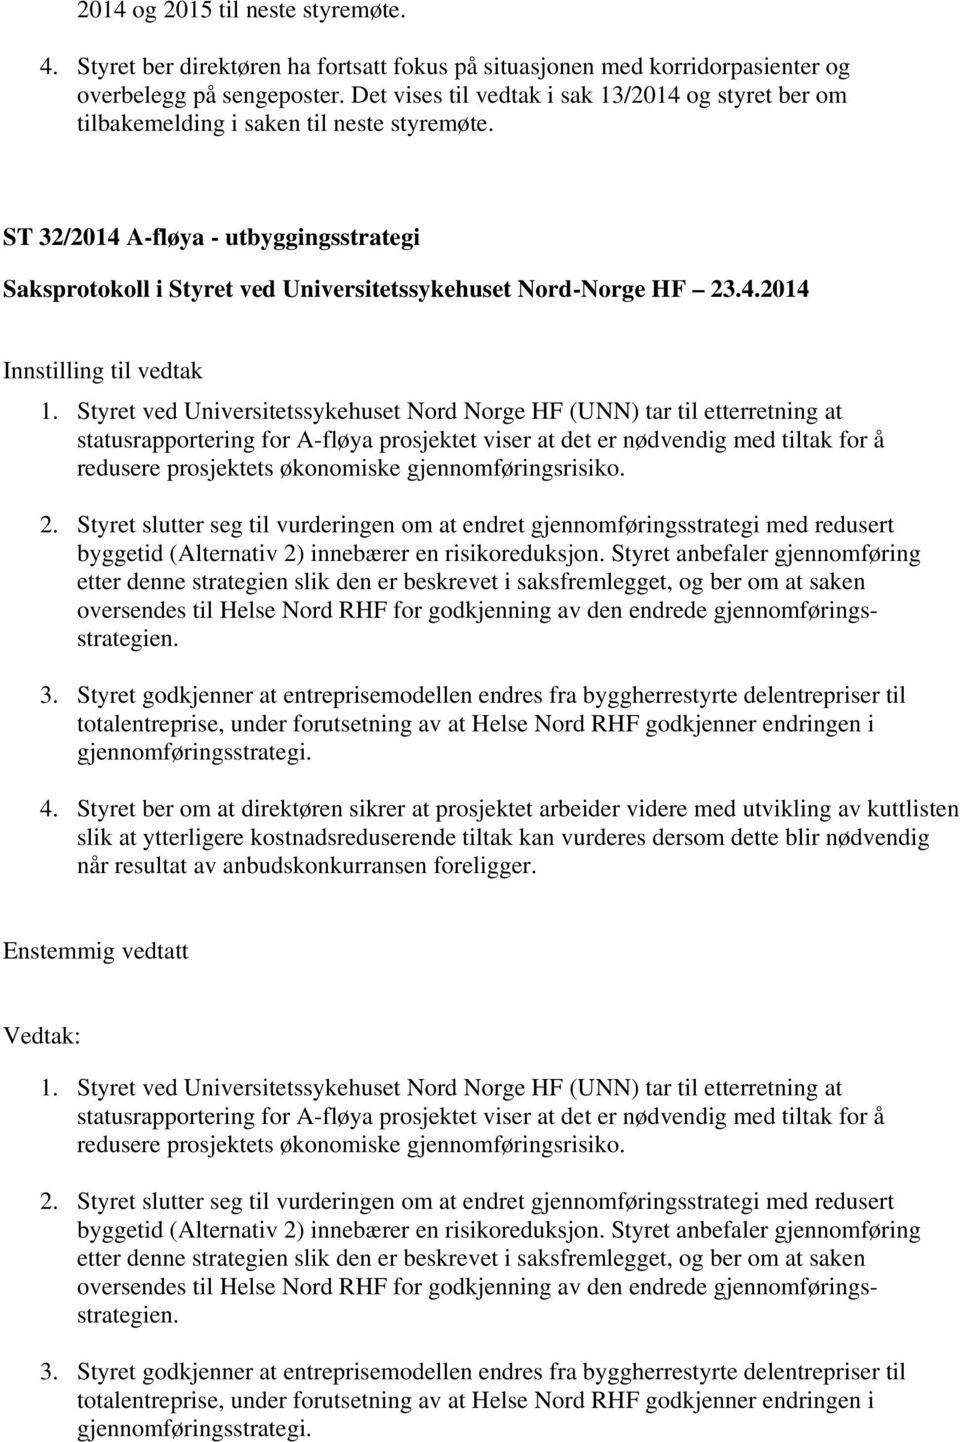 Styret ved Universitetssykehuset Nord Norge HF (UNN) tar til etterretning at statusrapportering for A-fløya prosjektet viser at det er nødvendig med tiltak for å redusere prosjektets økonomiske